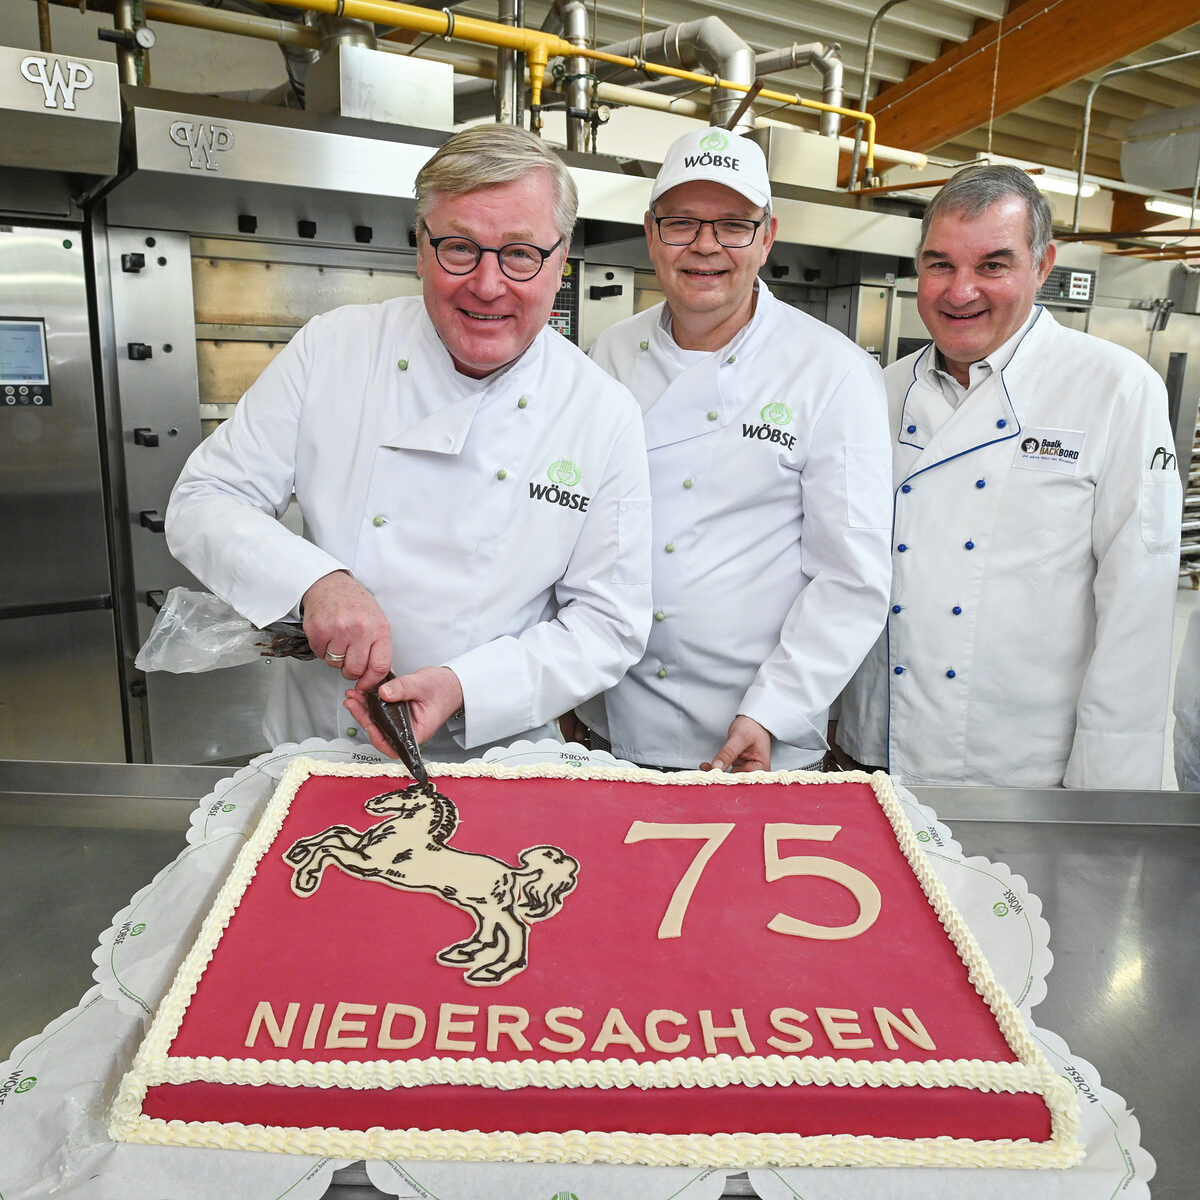 Geburtstagstorte 75 Jahre Niedersachsen Bäckerei Wöbse